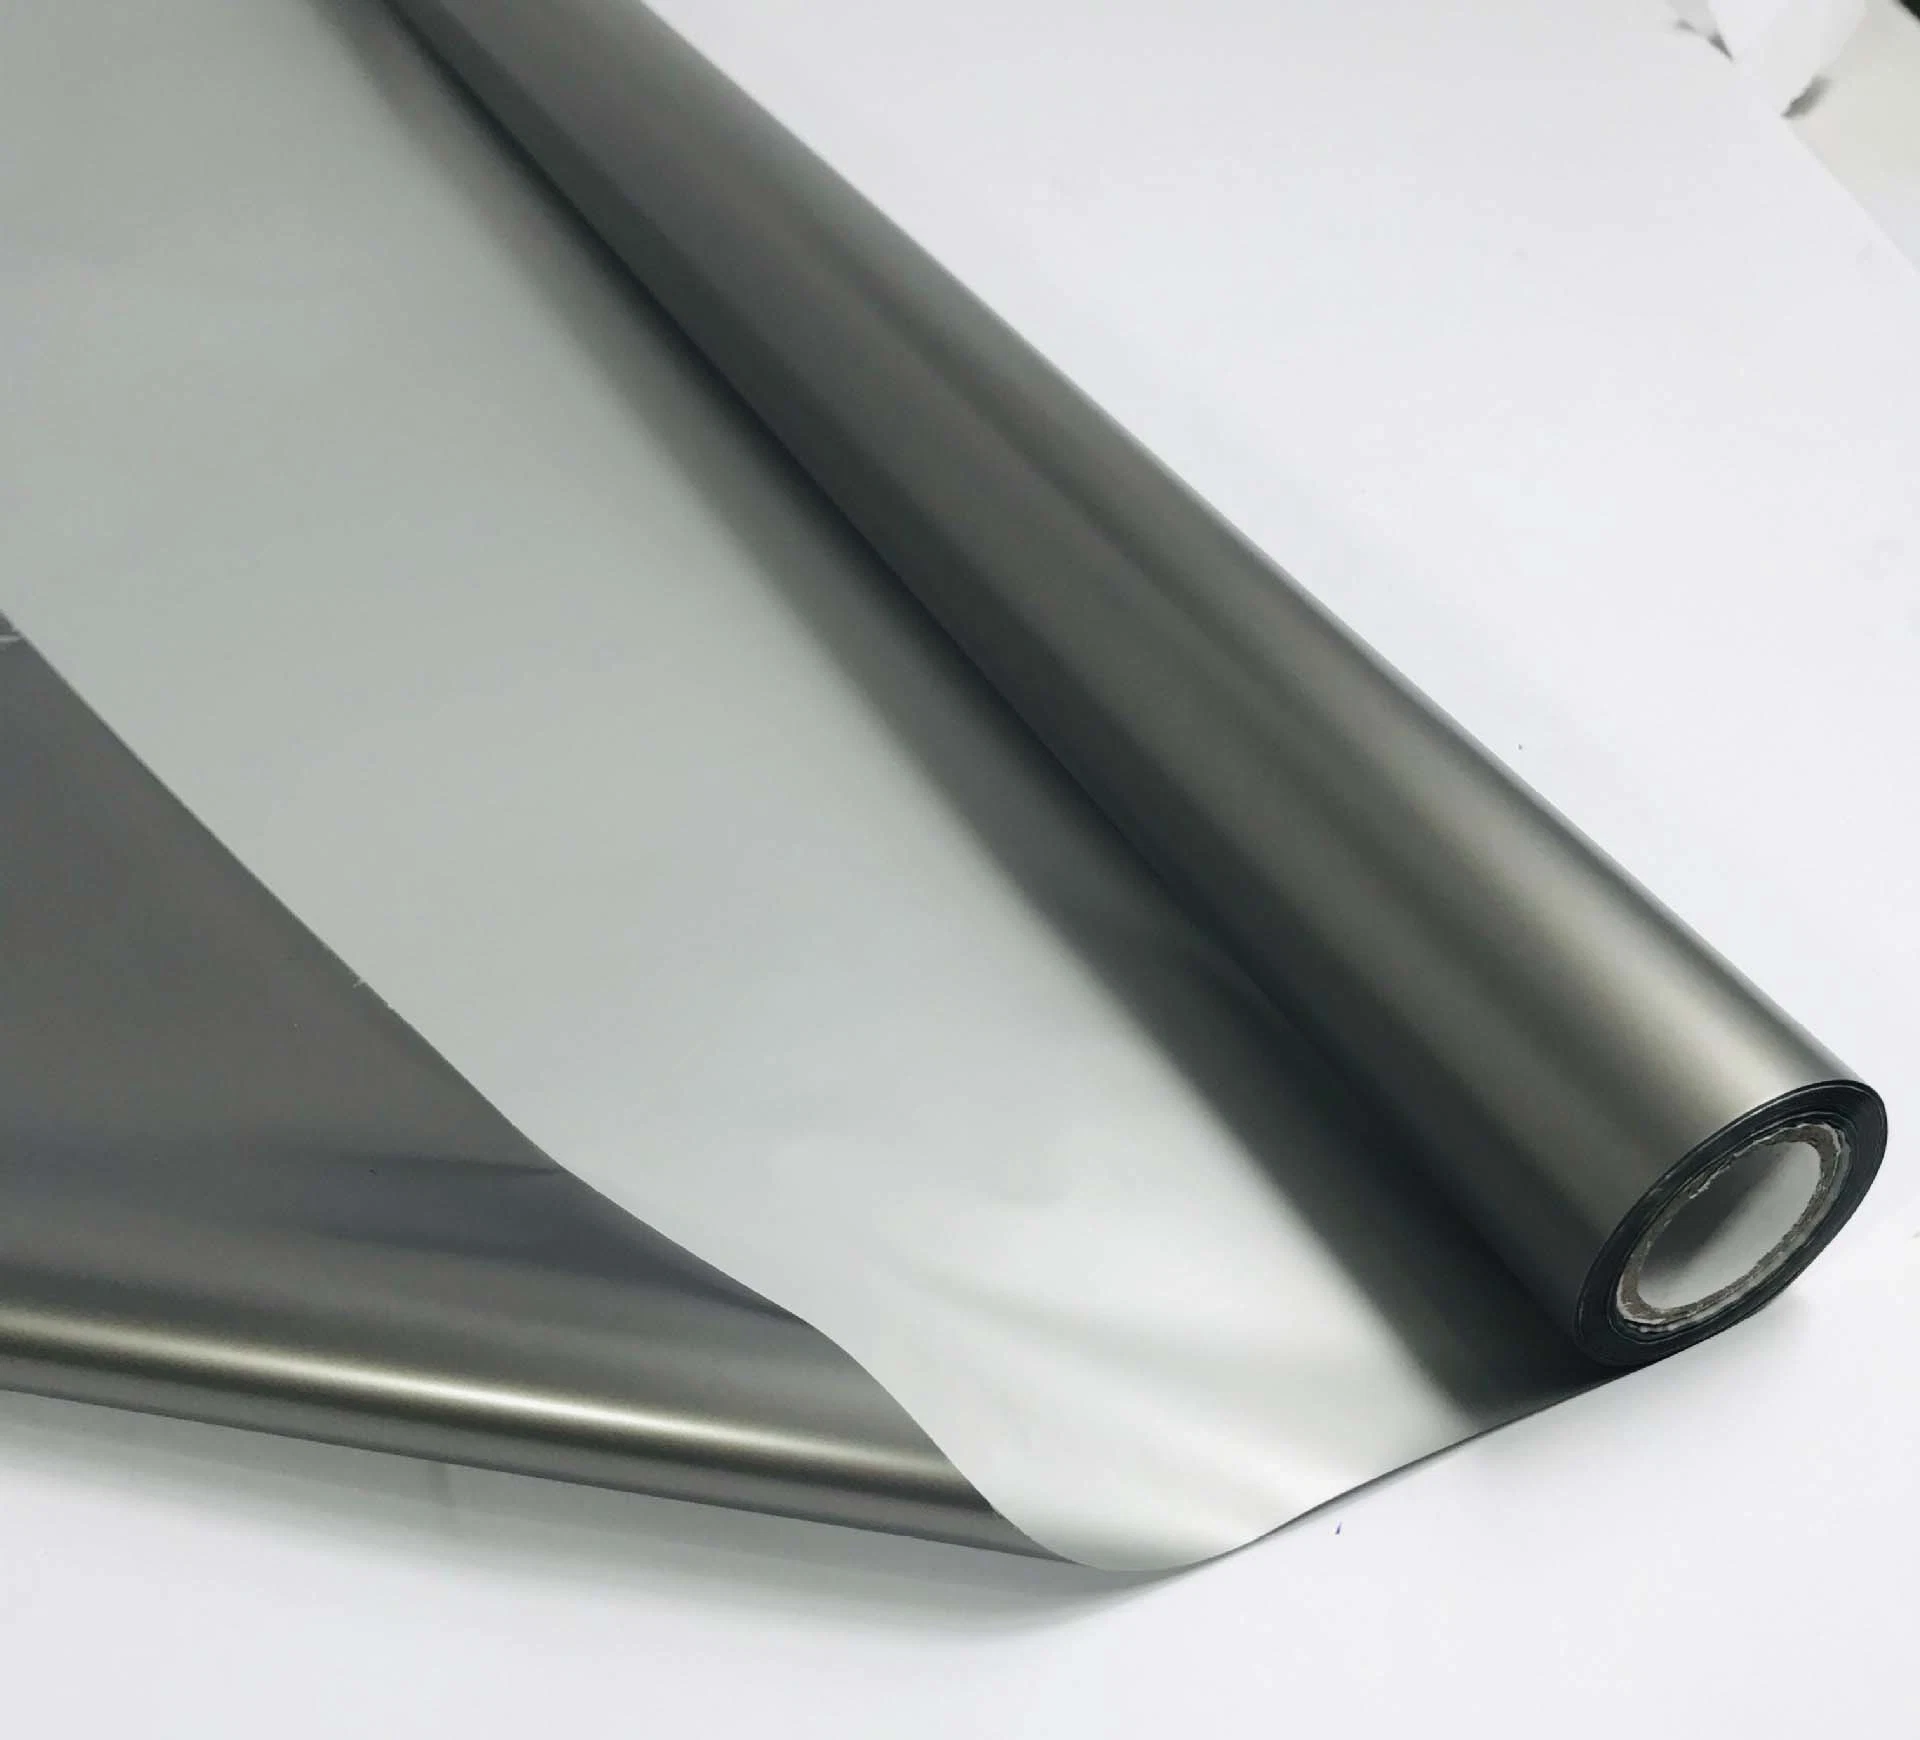 General-Purpose Paper-Plastic Meio de finalidade dupla e embalagem de alta qualidade de filme fosco Cinza mate caixa de alumínio anodizado Bronzagem branco